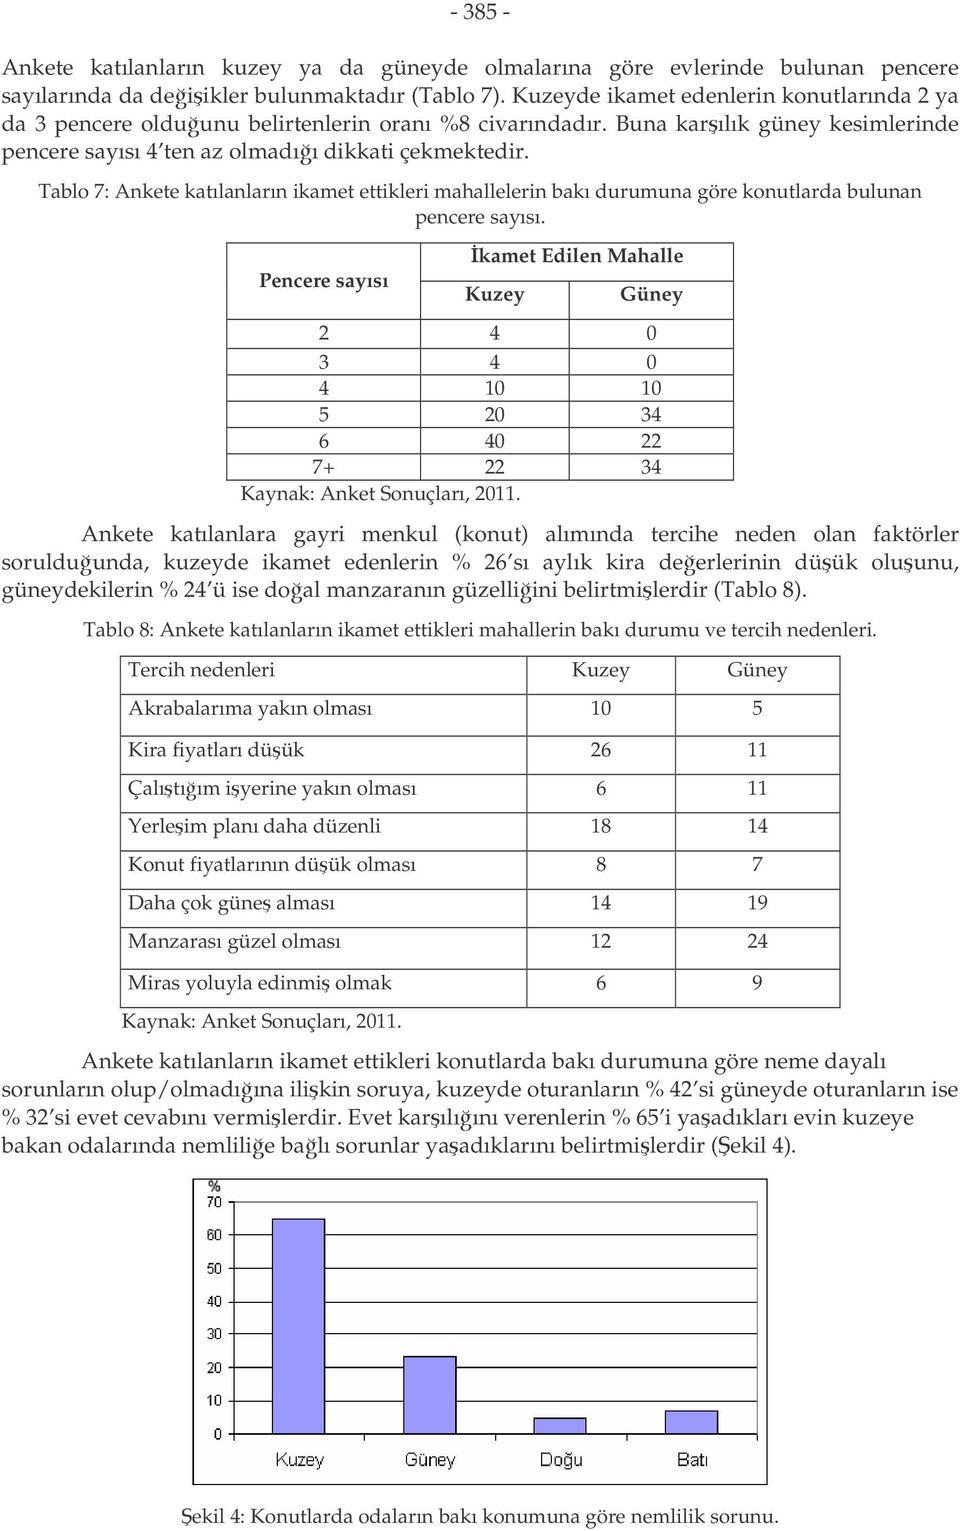 Tablo 7: Ankete katılanların ikamet ettikleri mahallelerin bakı durumuna göre konutlarda bulunan pencere sayısı.